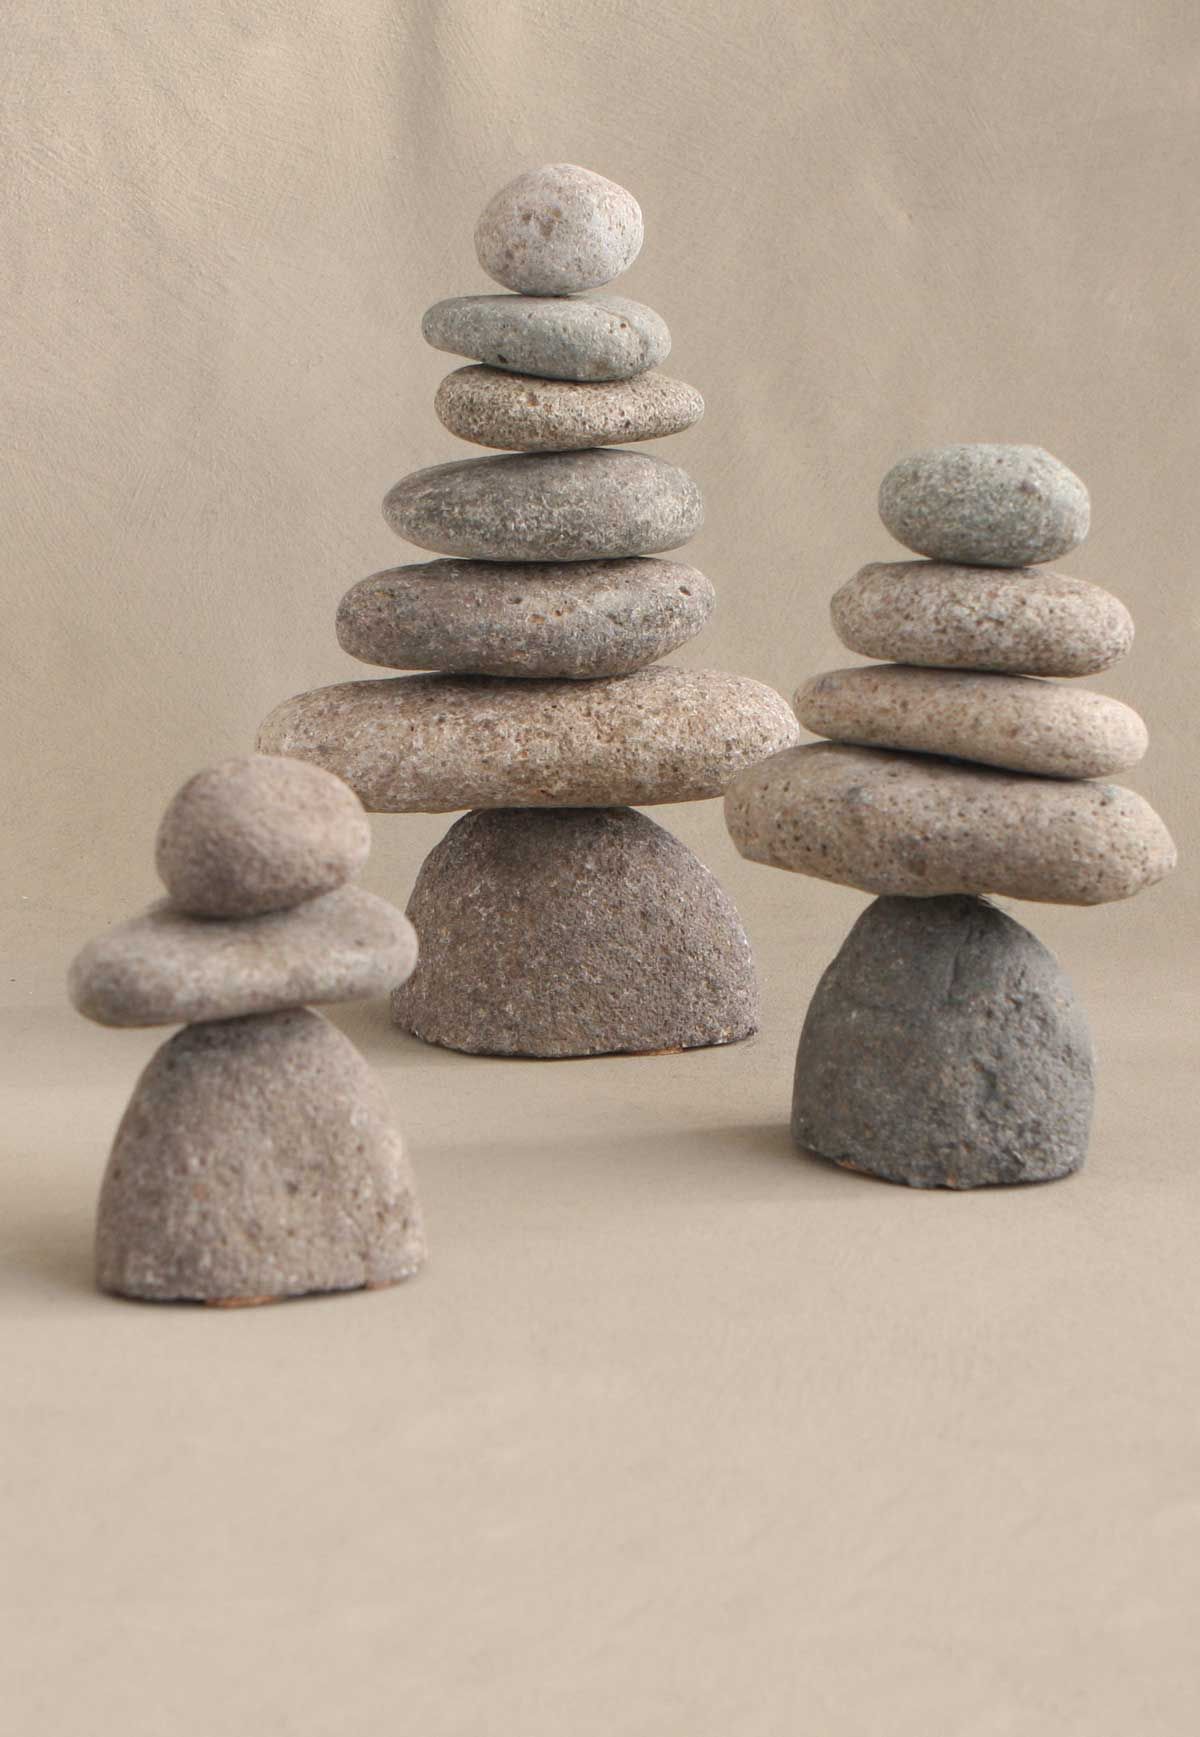 Natural River Stone Rock Cairn Stacked Zen Garden Pile Zen